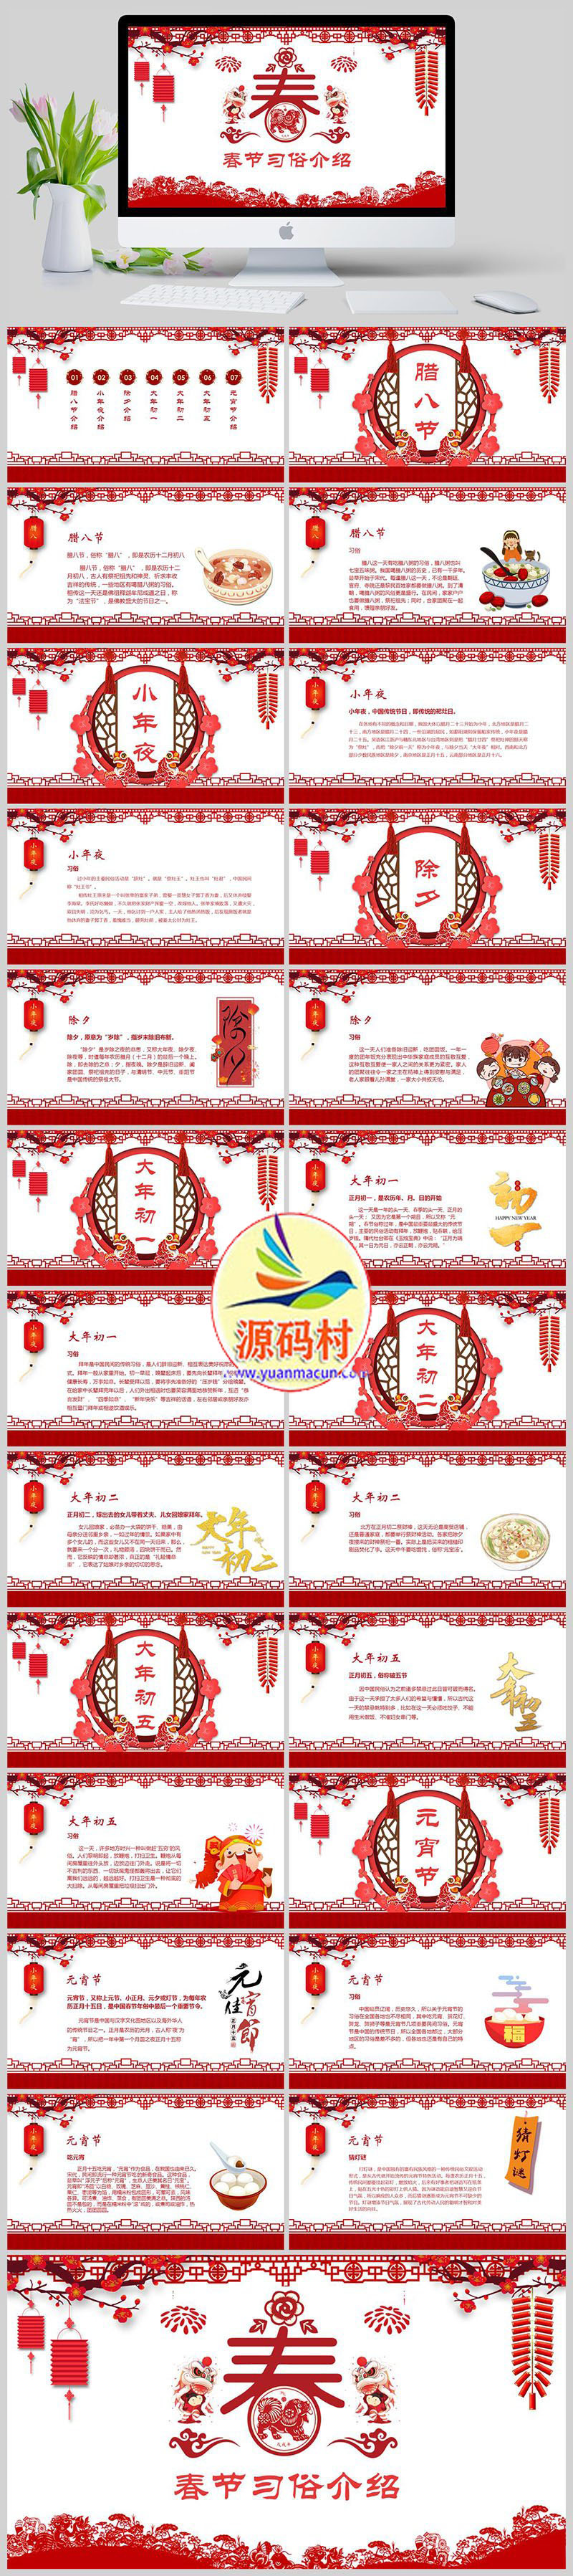 红色中国风新年春节习俗宣传介绍PPT模板下载,1.jpg,模板下载,第1张